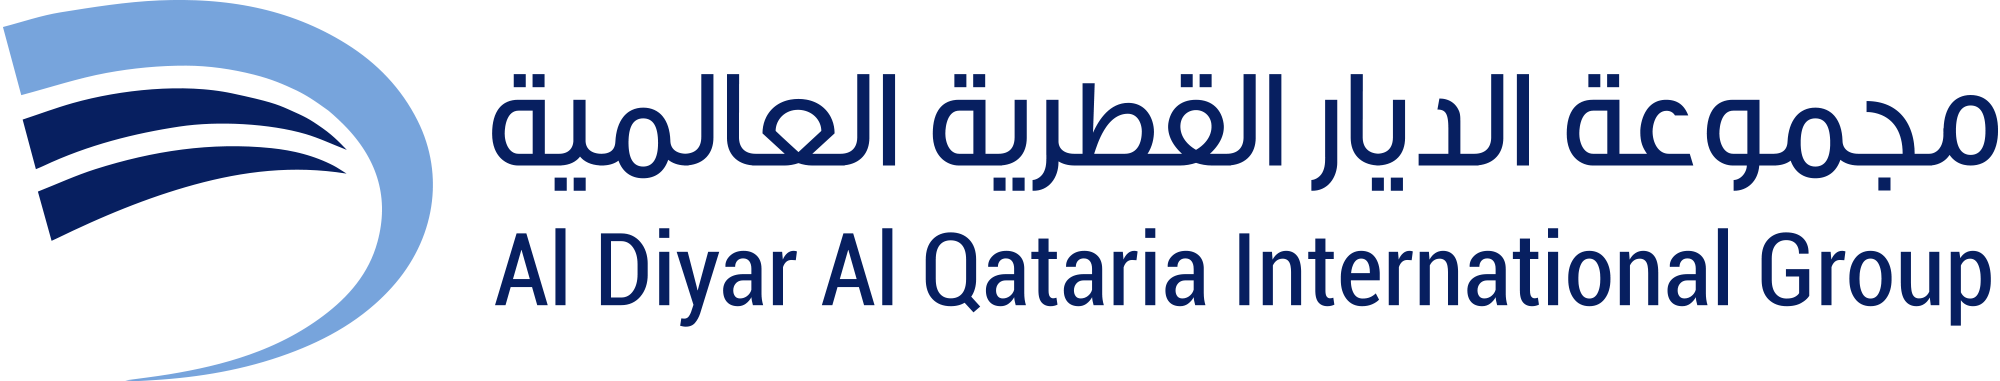 Al Diyar Al Qataria International Group